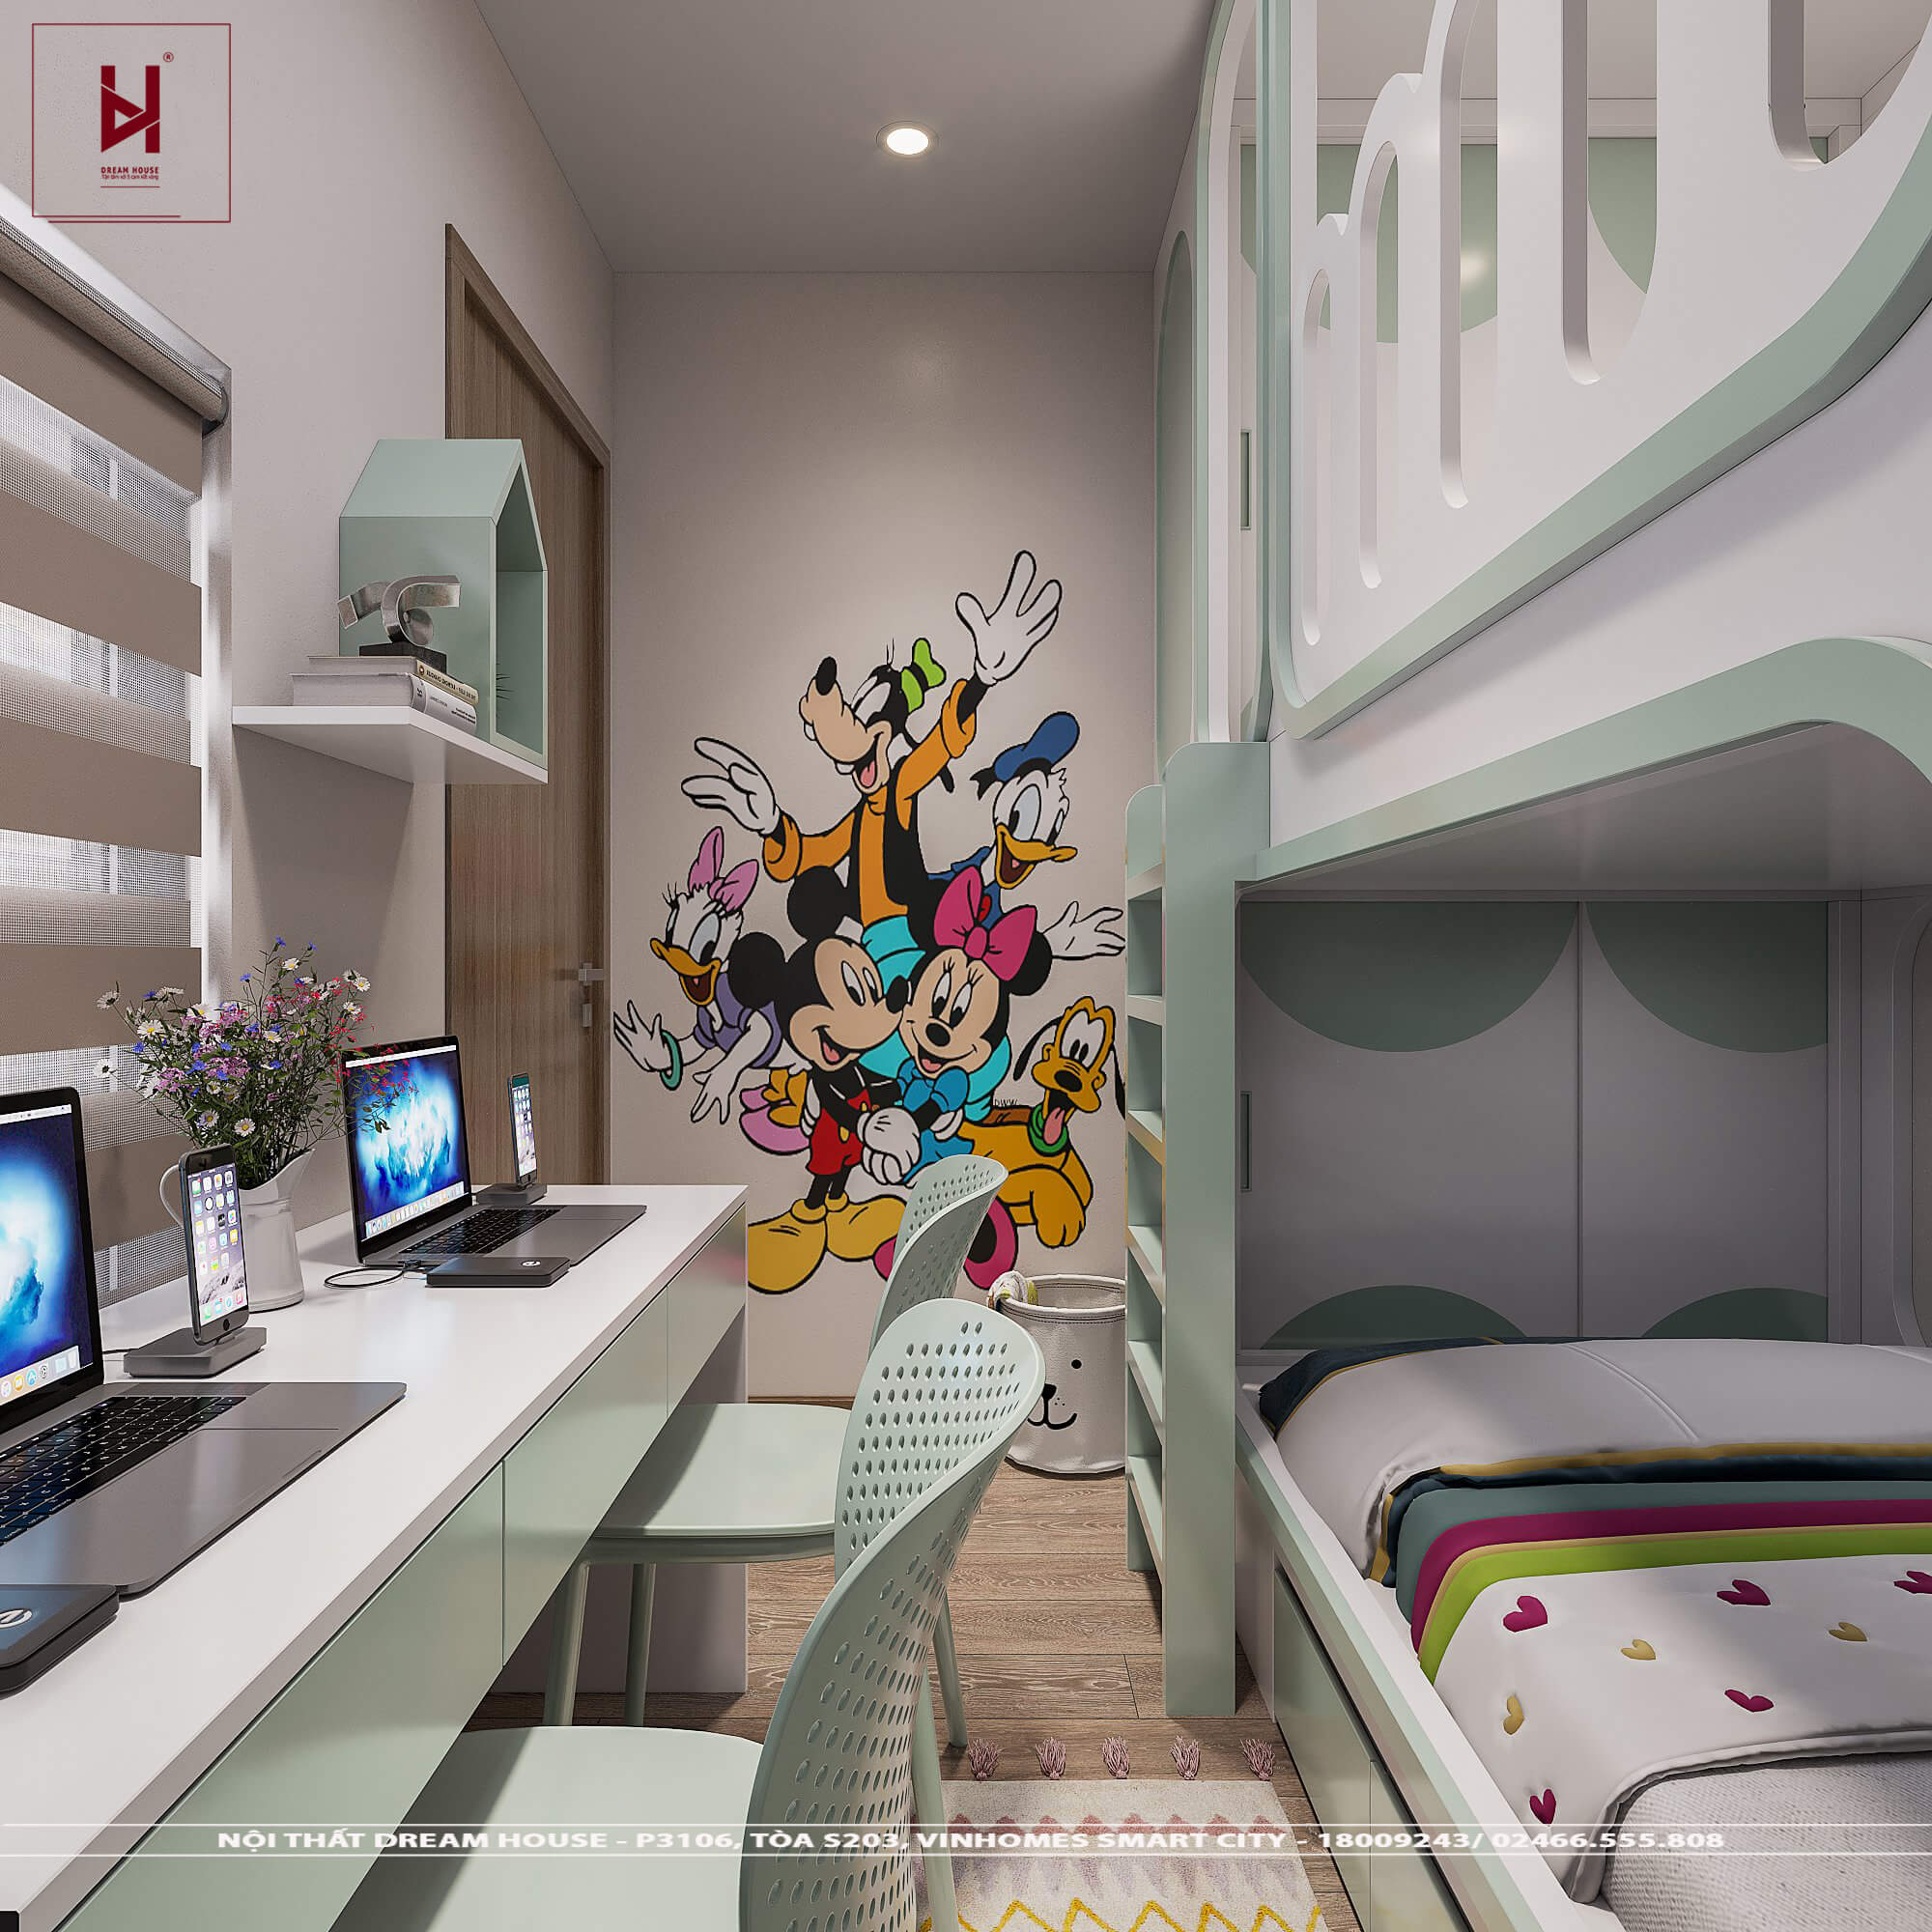 Hệ giường tầng thông minh là sản phẩm được nhiều gia đình lựa chọn cho các căn hộ chật hẹp hoặc phòng ngủ của con trẻ. Hệ giường tầng thông minh giúp tối ưu hóa không gian và đem lại sự thoải mái cũng như an tâm cho người sử dụng. Sản phẩm này còn giúp tăng tính tương tác giữa các thành viên trong gia đình.